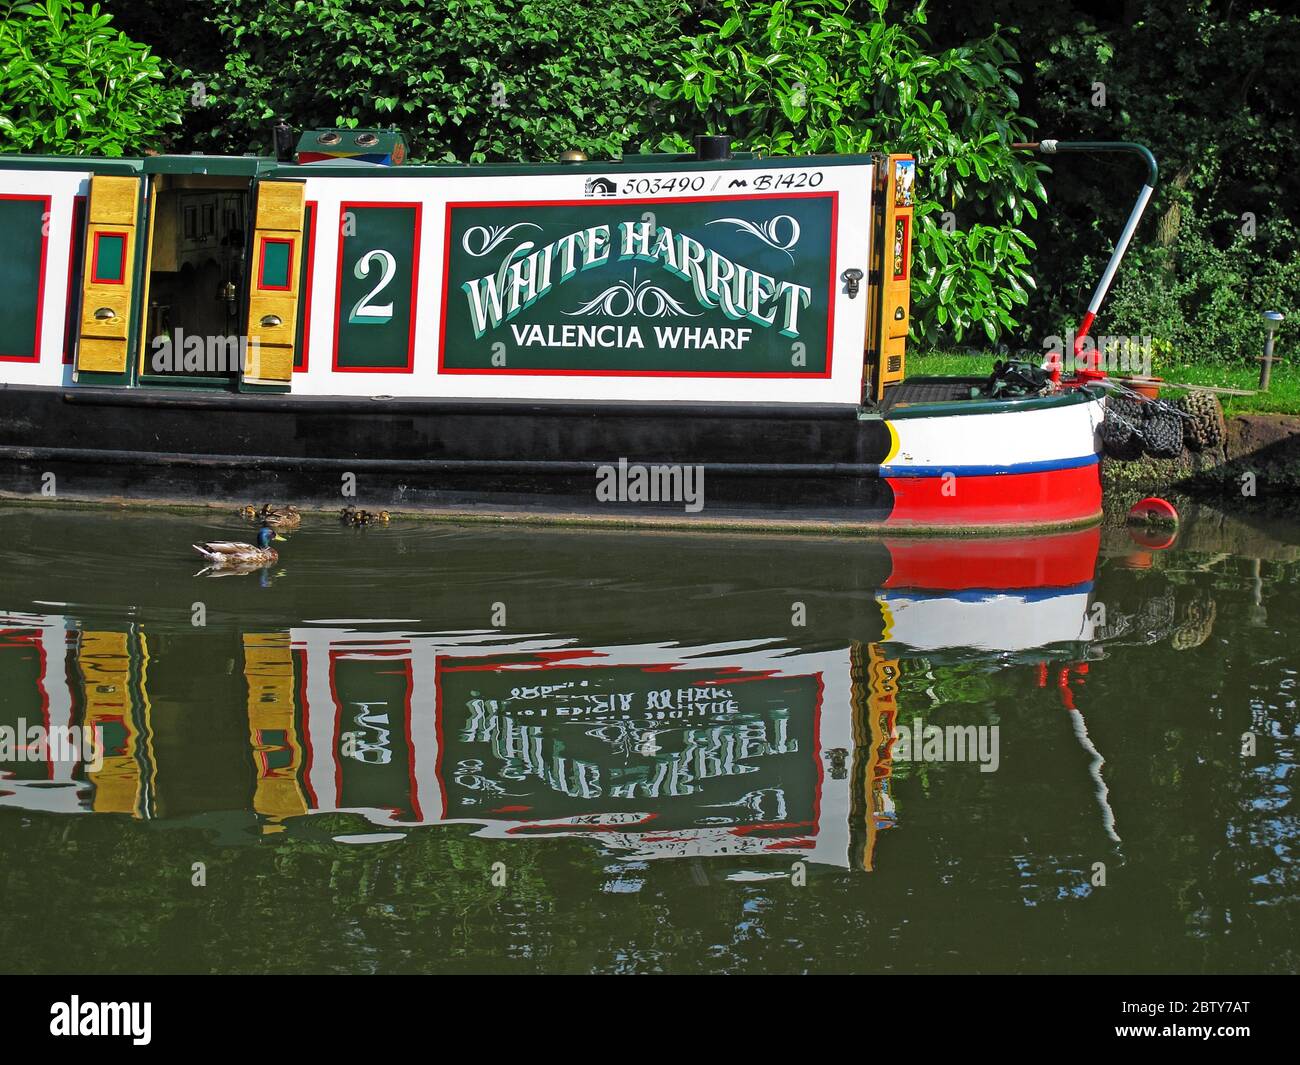 503490 ,B1420 White Harriet Valencia Wharf Narrowboot, Barge auf Kanal, Cheshire, England, Großbritannien, Reflexion Stockfoto